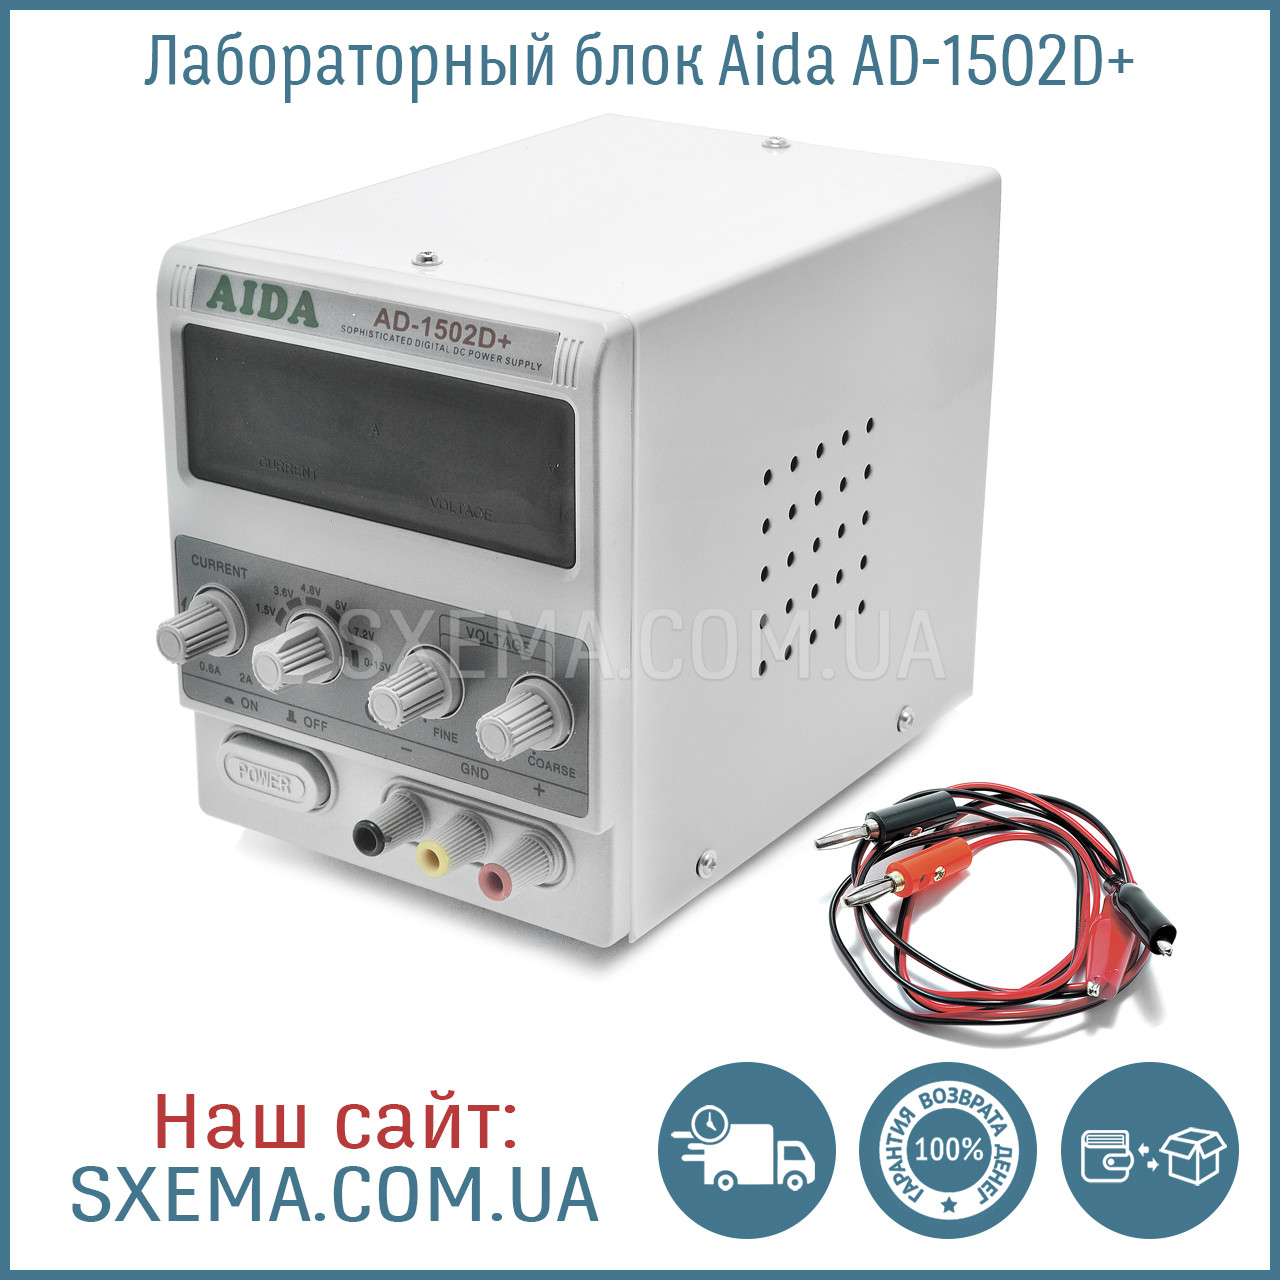 Лабораторний блок живлення AIDA AD-1502D+, 15 V, 2 A, RF індикатор, автовідновлення після КЗ